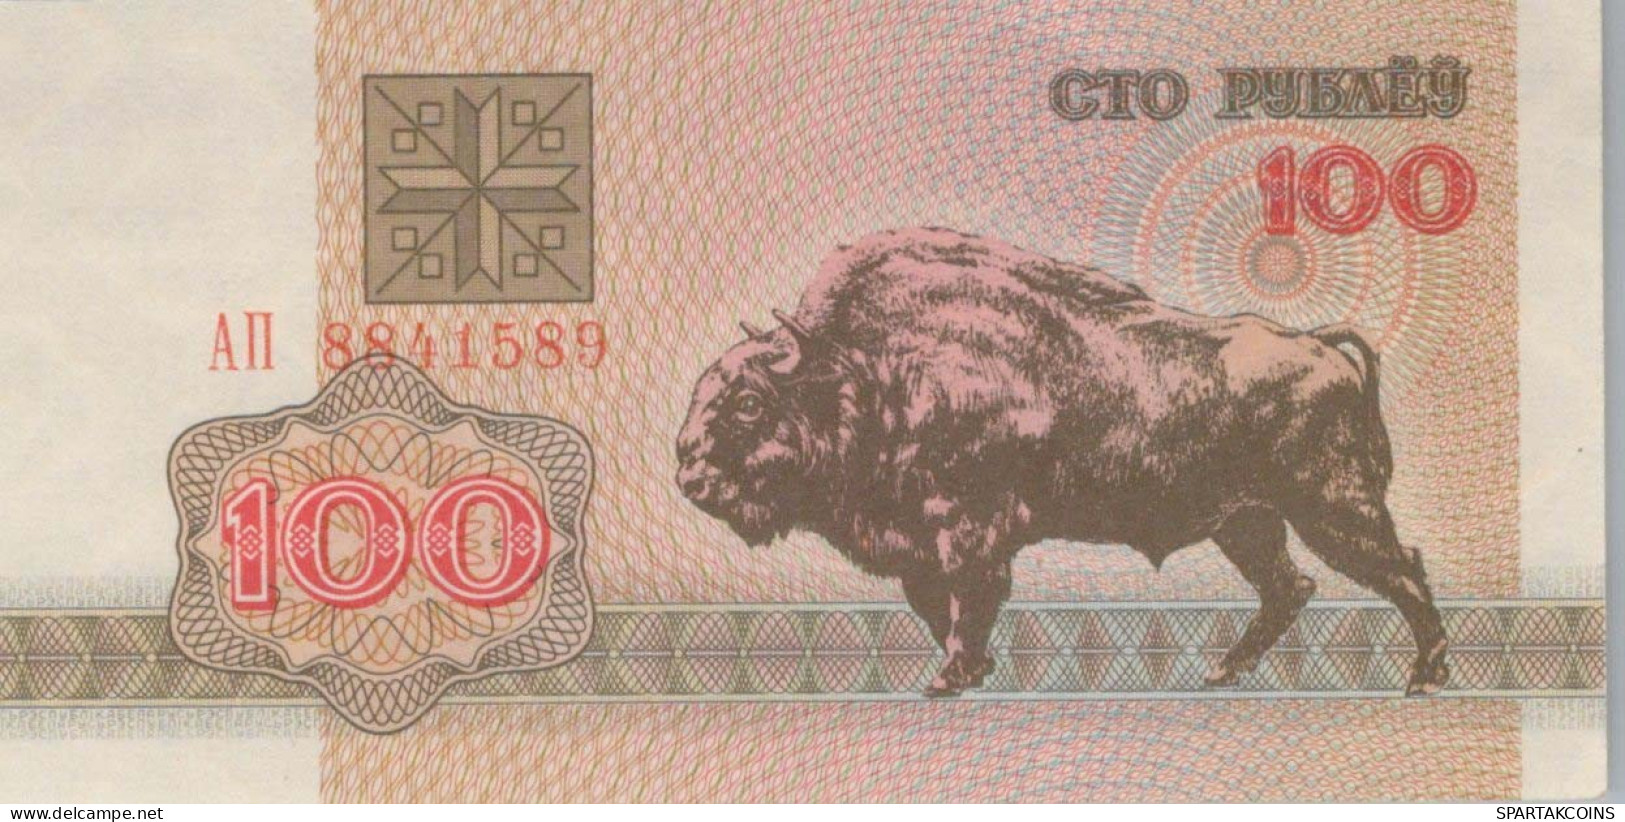 100 RUBLES 1992 BELARUS Papiergeld Banknote #PJ284 - [11] Local Banknote Issues